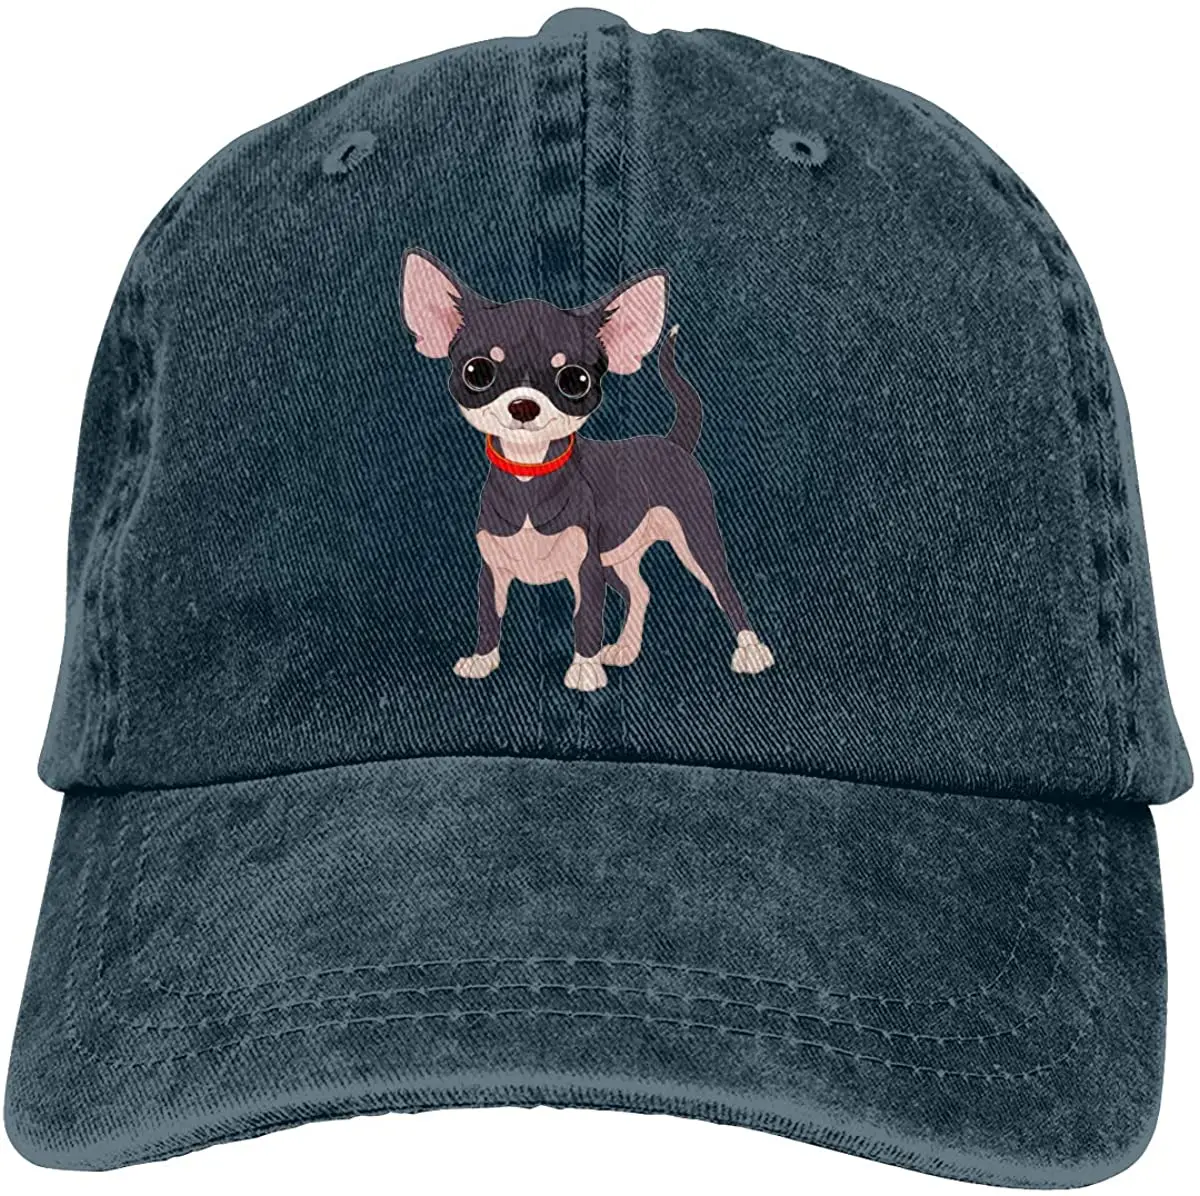 

Джинсовая кепка FUN DOGE для чихуахуа, бейсбольная кепка, регулируемая Классическая Спортивная Кепка для мужчин и женщин, темно-синяя, один раз...